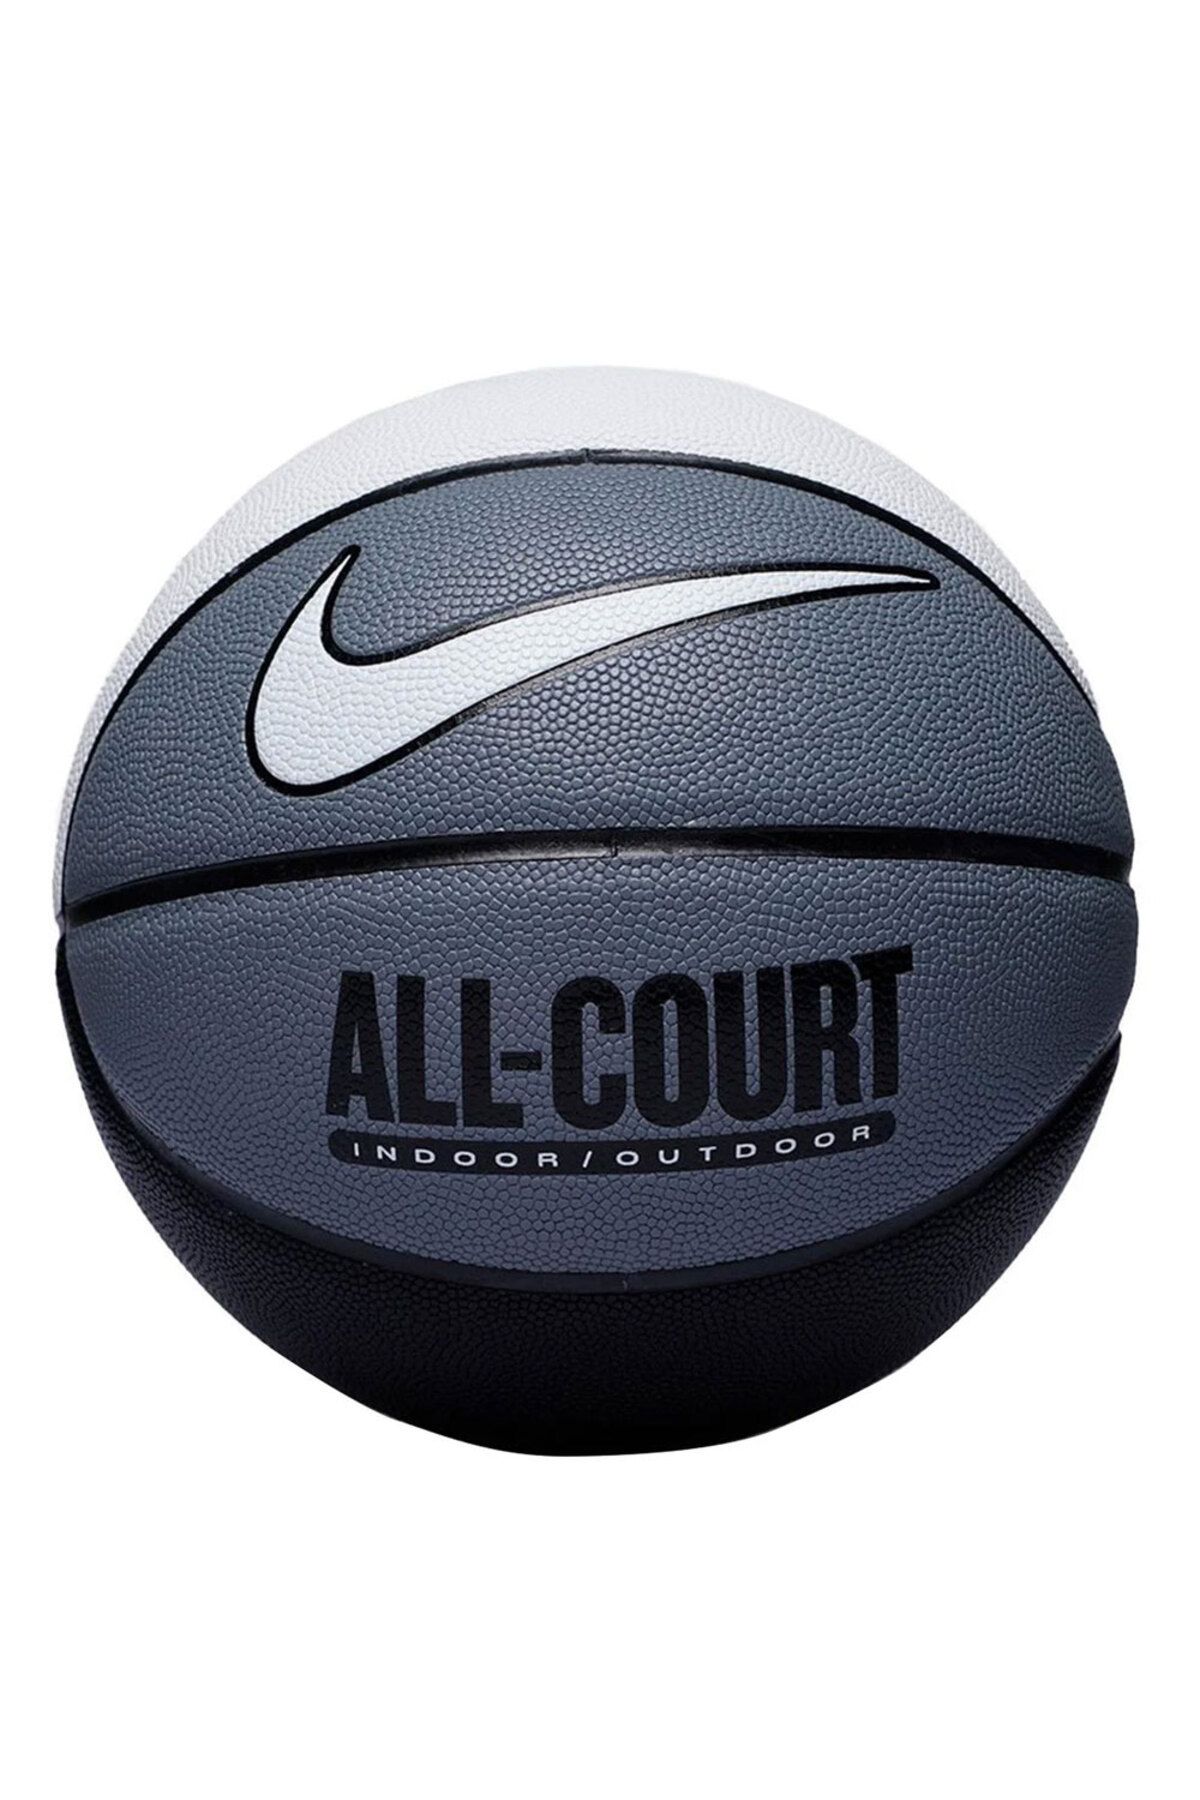 Nike Everyday All Court 8p Basketbol Topu N.100.4369.120.07